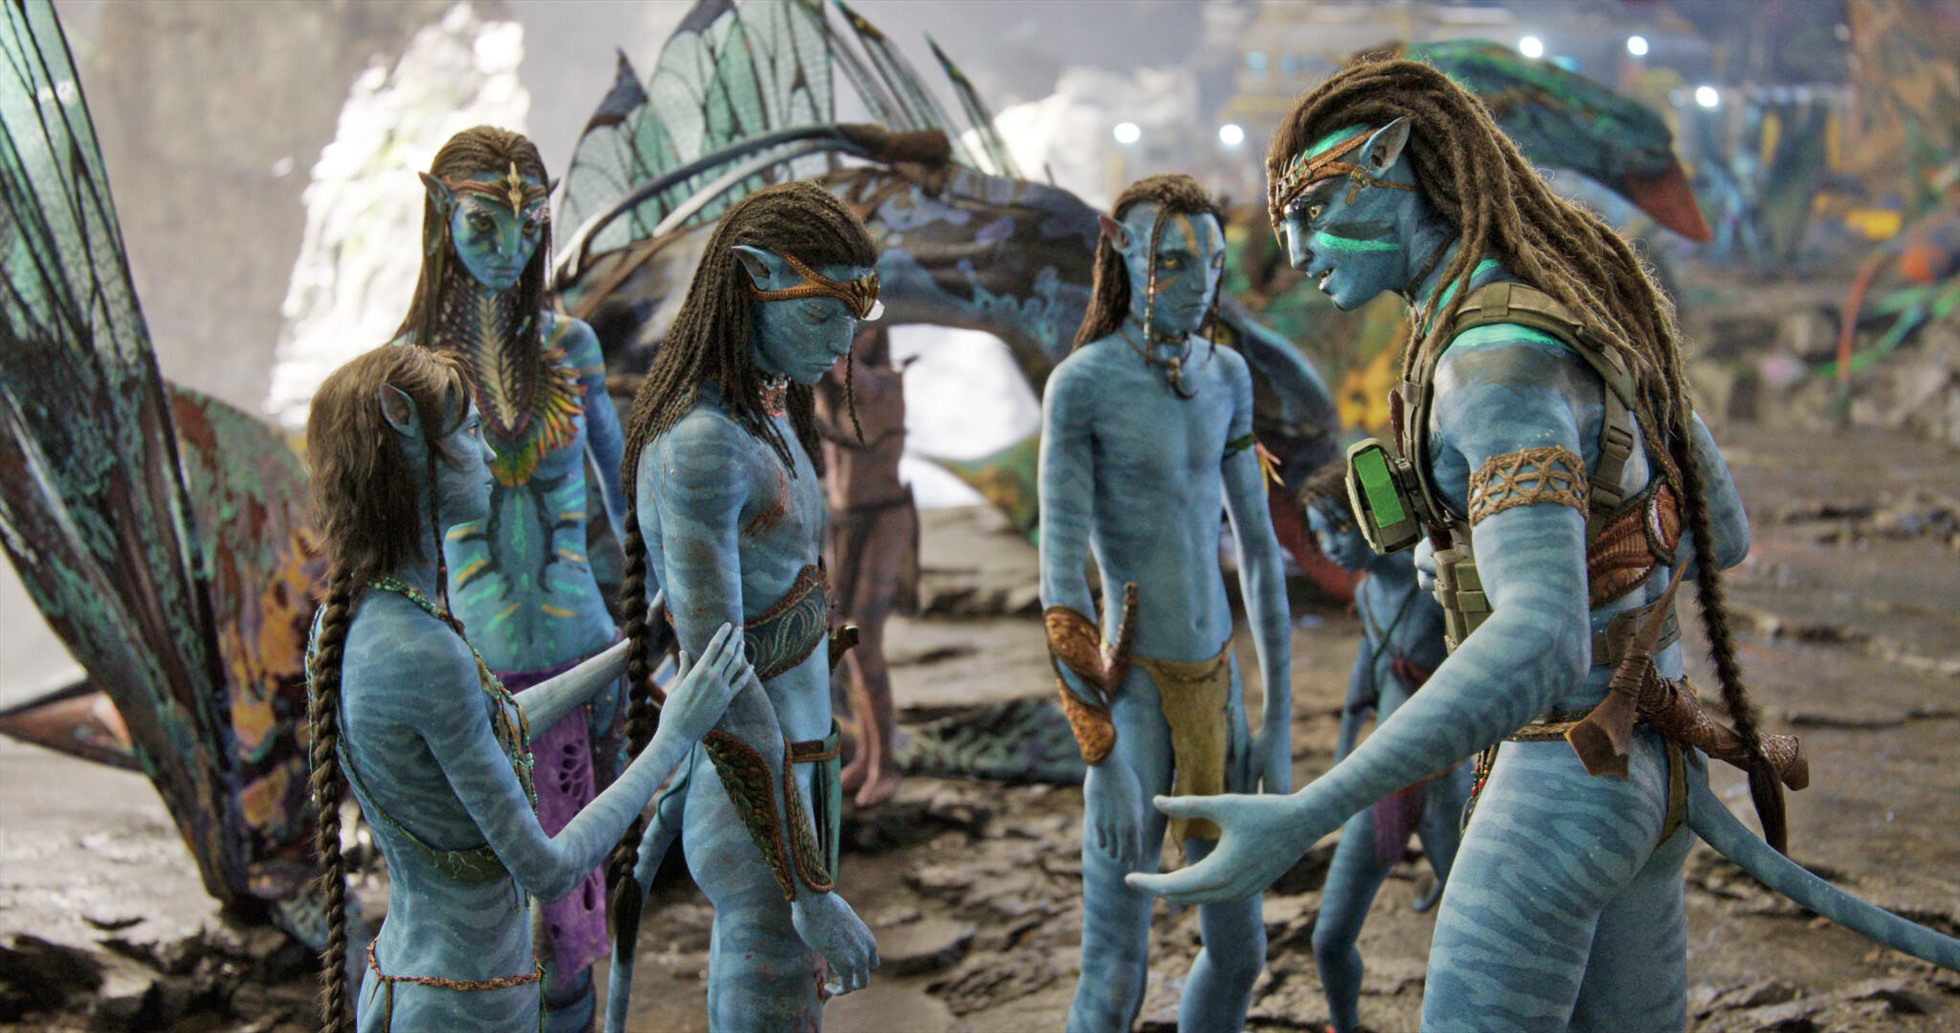 Phim Avatar The Way of Water nhận được nhiều phản hồi tích cực sau khi  ra mắt tại Anh  Báo Dân tộc và Phát triển